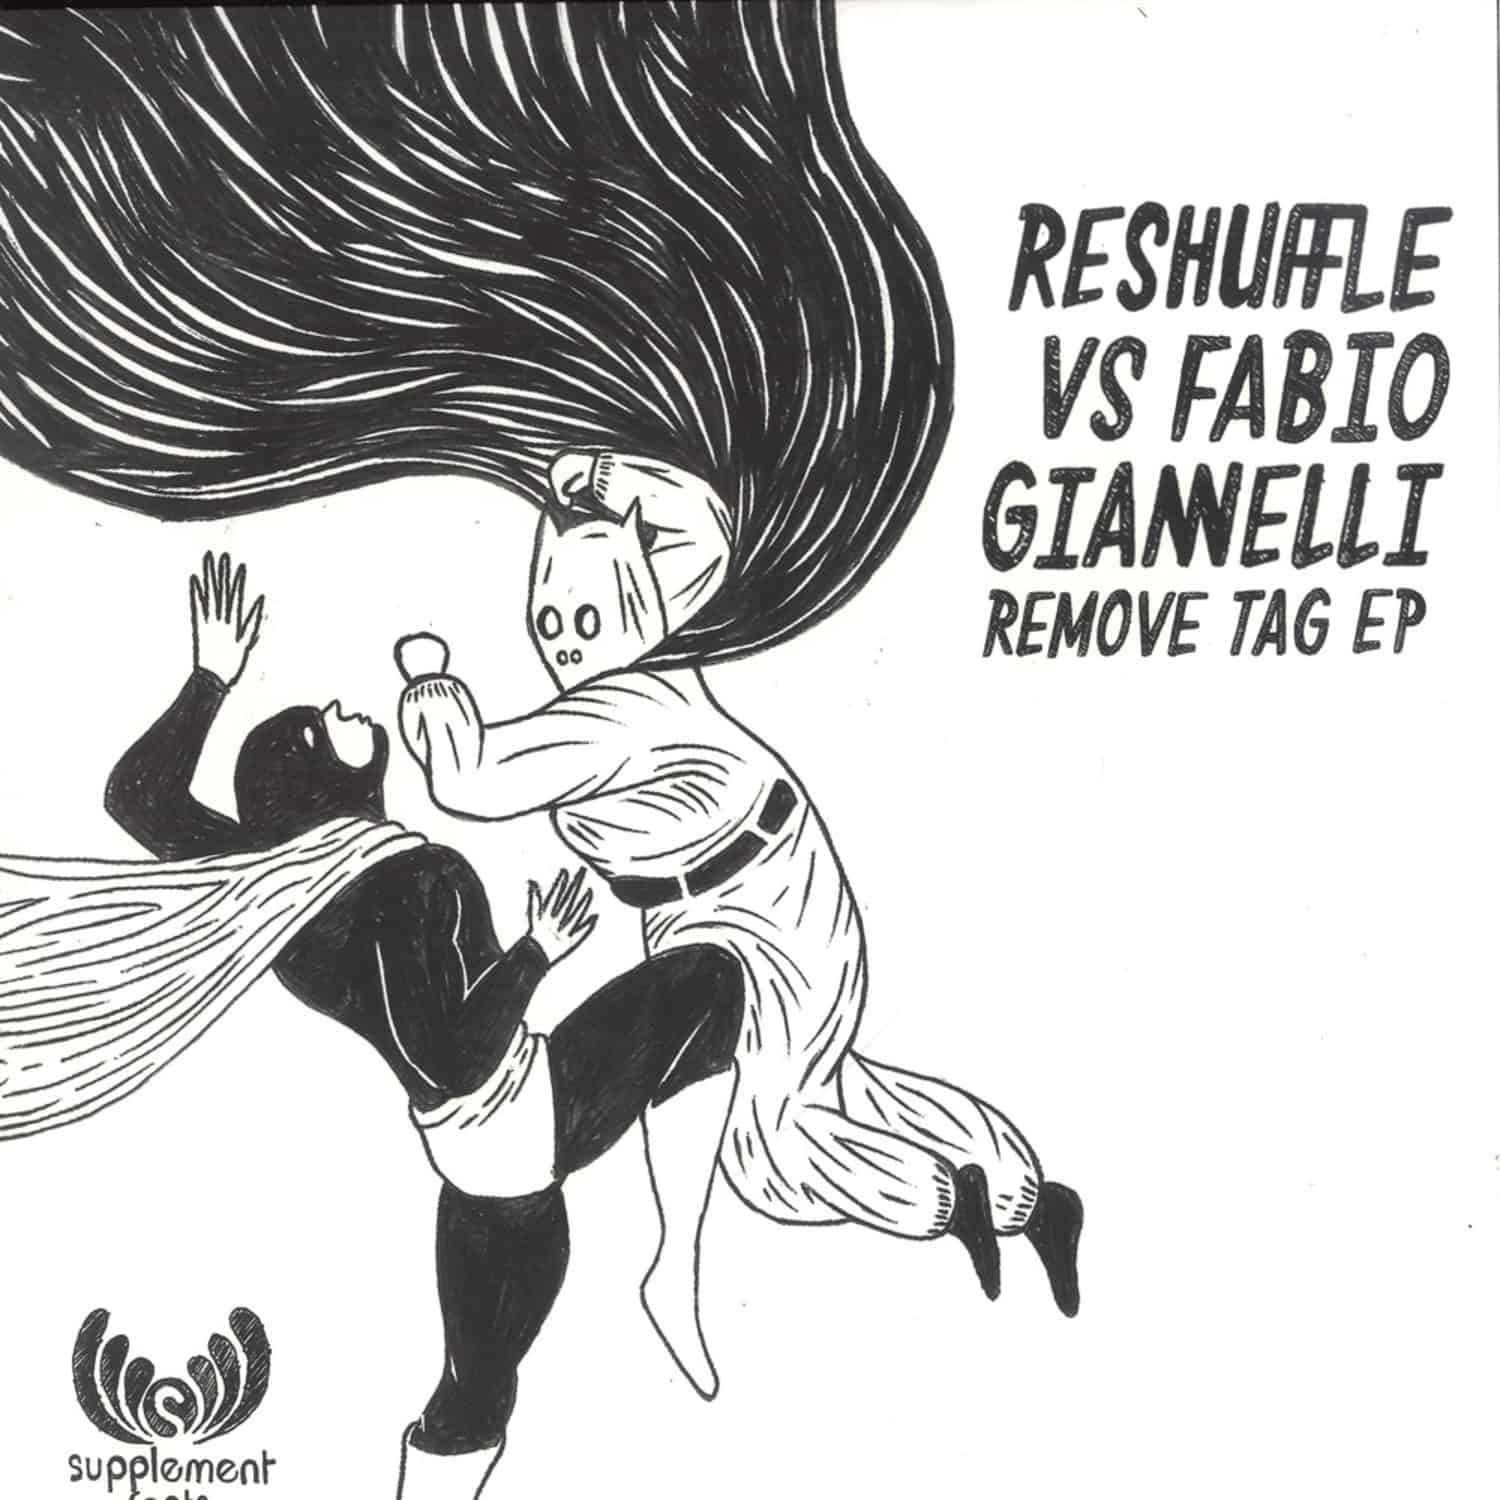 Reshuffle vs Fabio Giannelli - REMOVE TAG EP